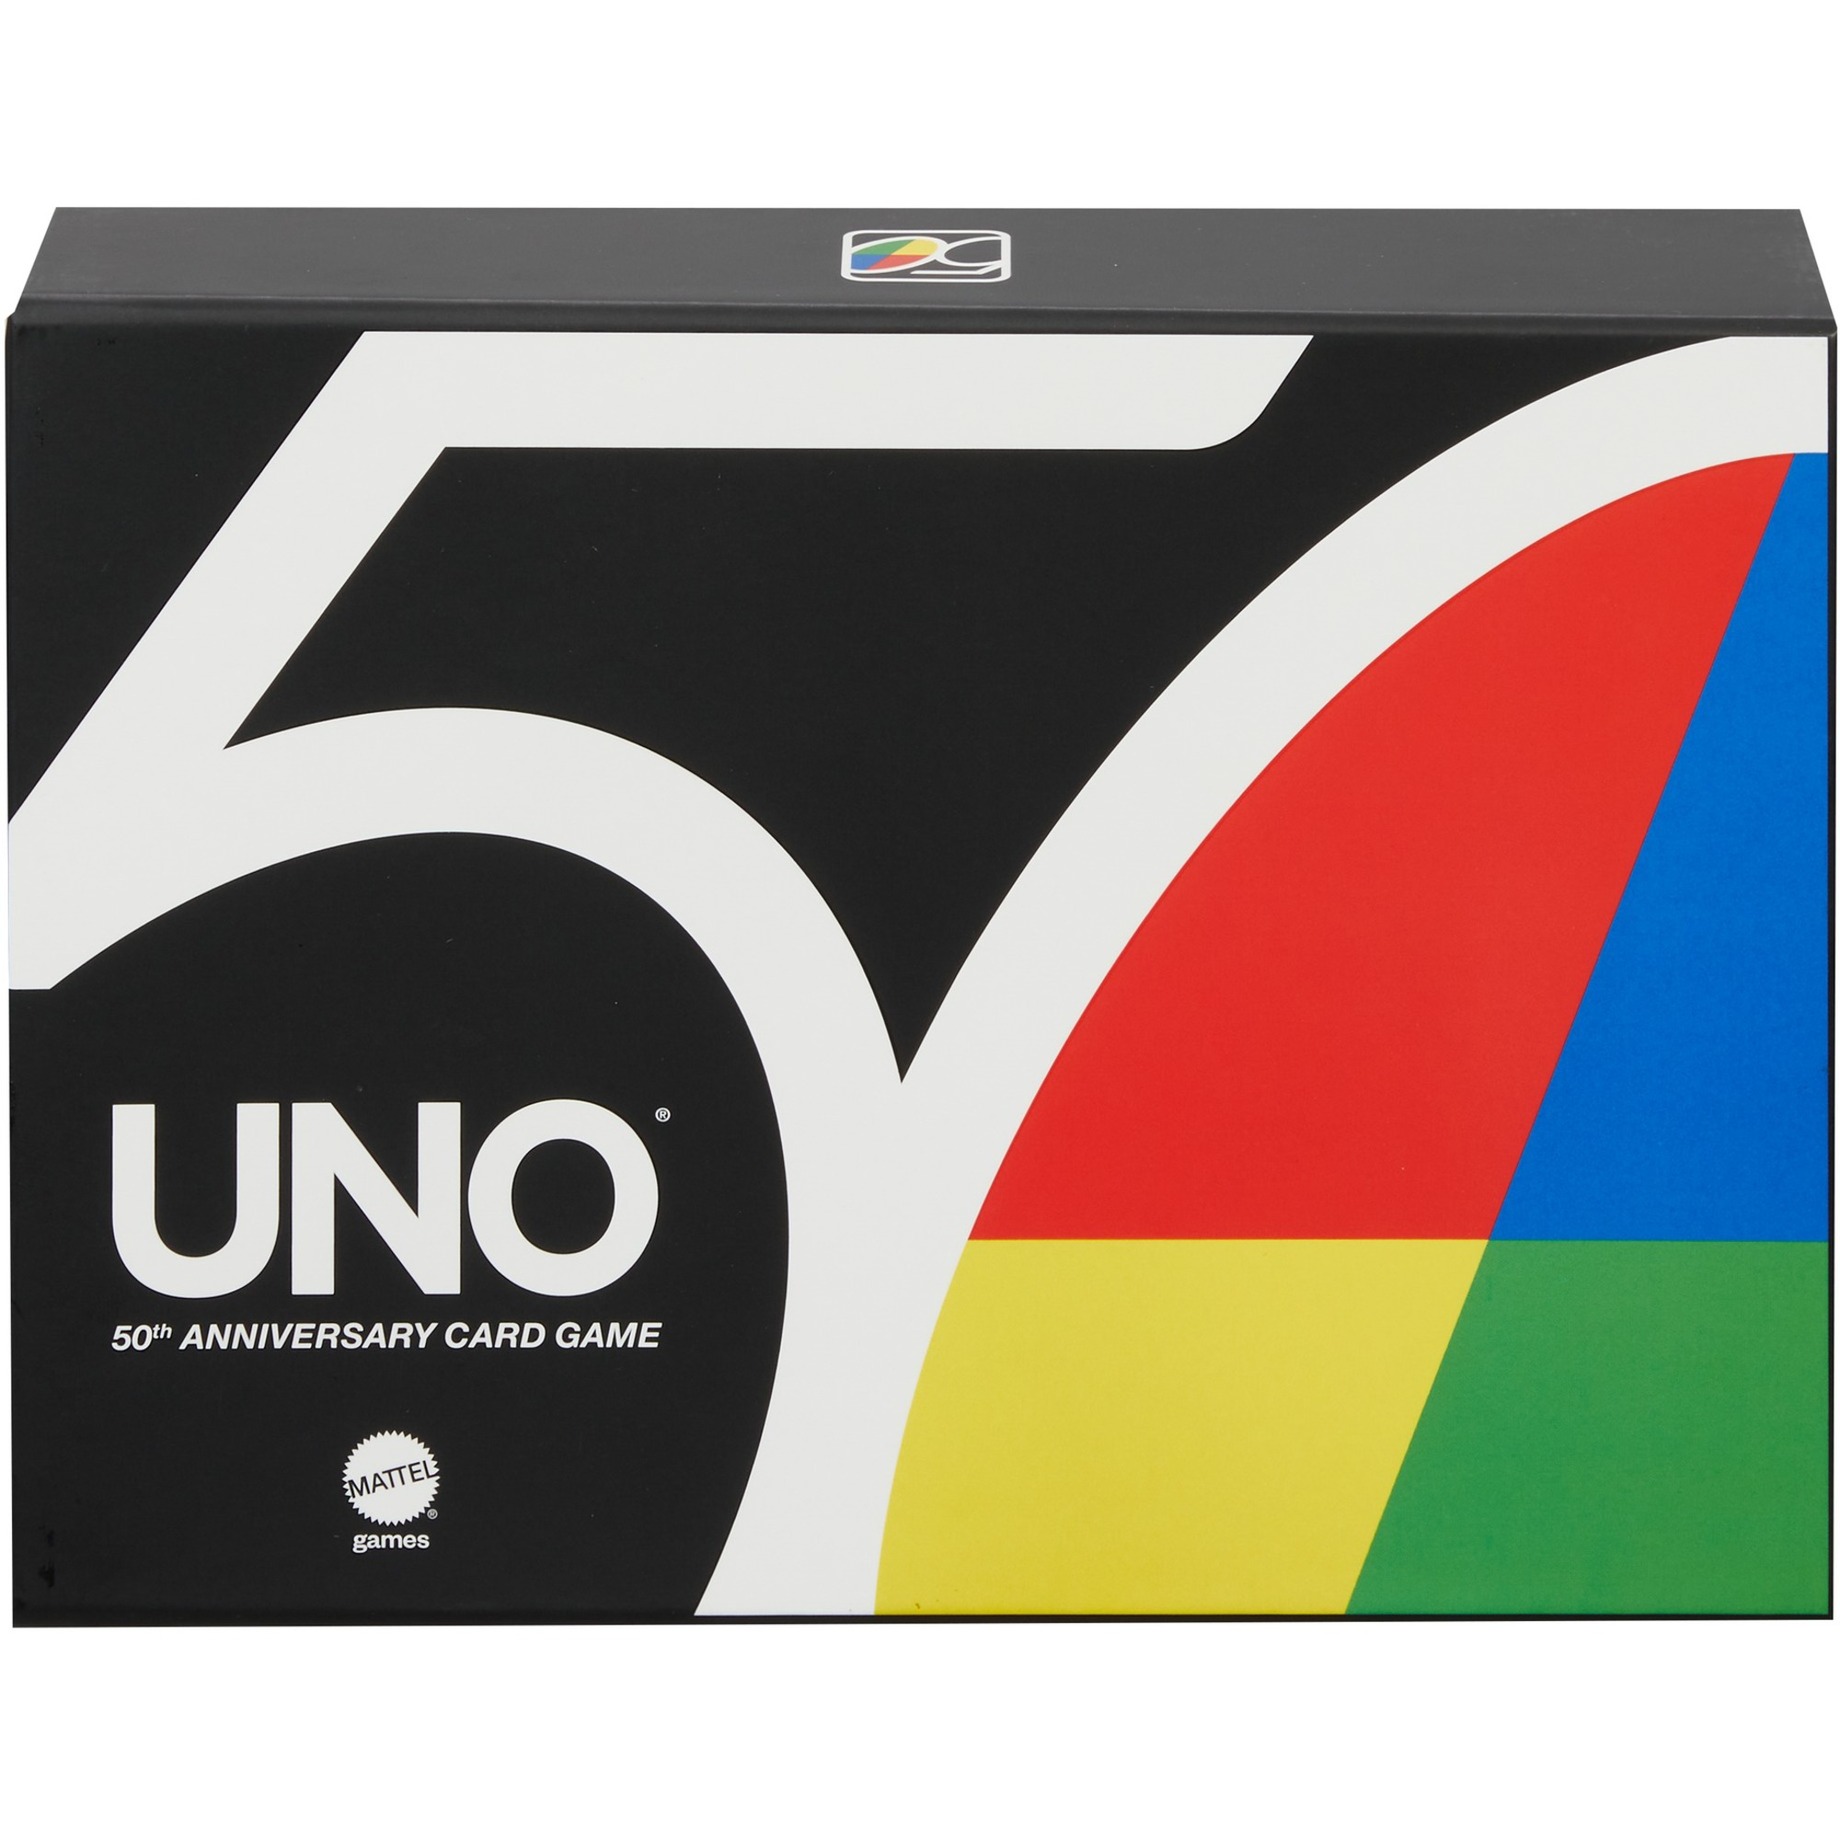 Image of Alternate - UNO Premium - 50 Jahre UNO Jubiläumsausgabe mit Münze, Kartenspiel online einkaufen bei Alternate